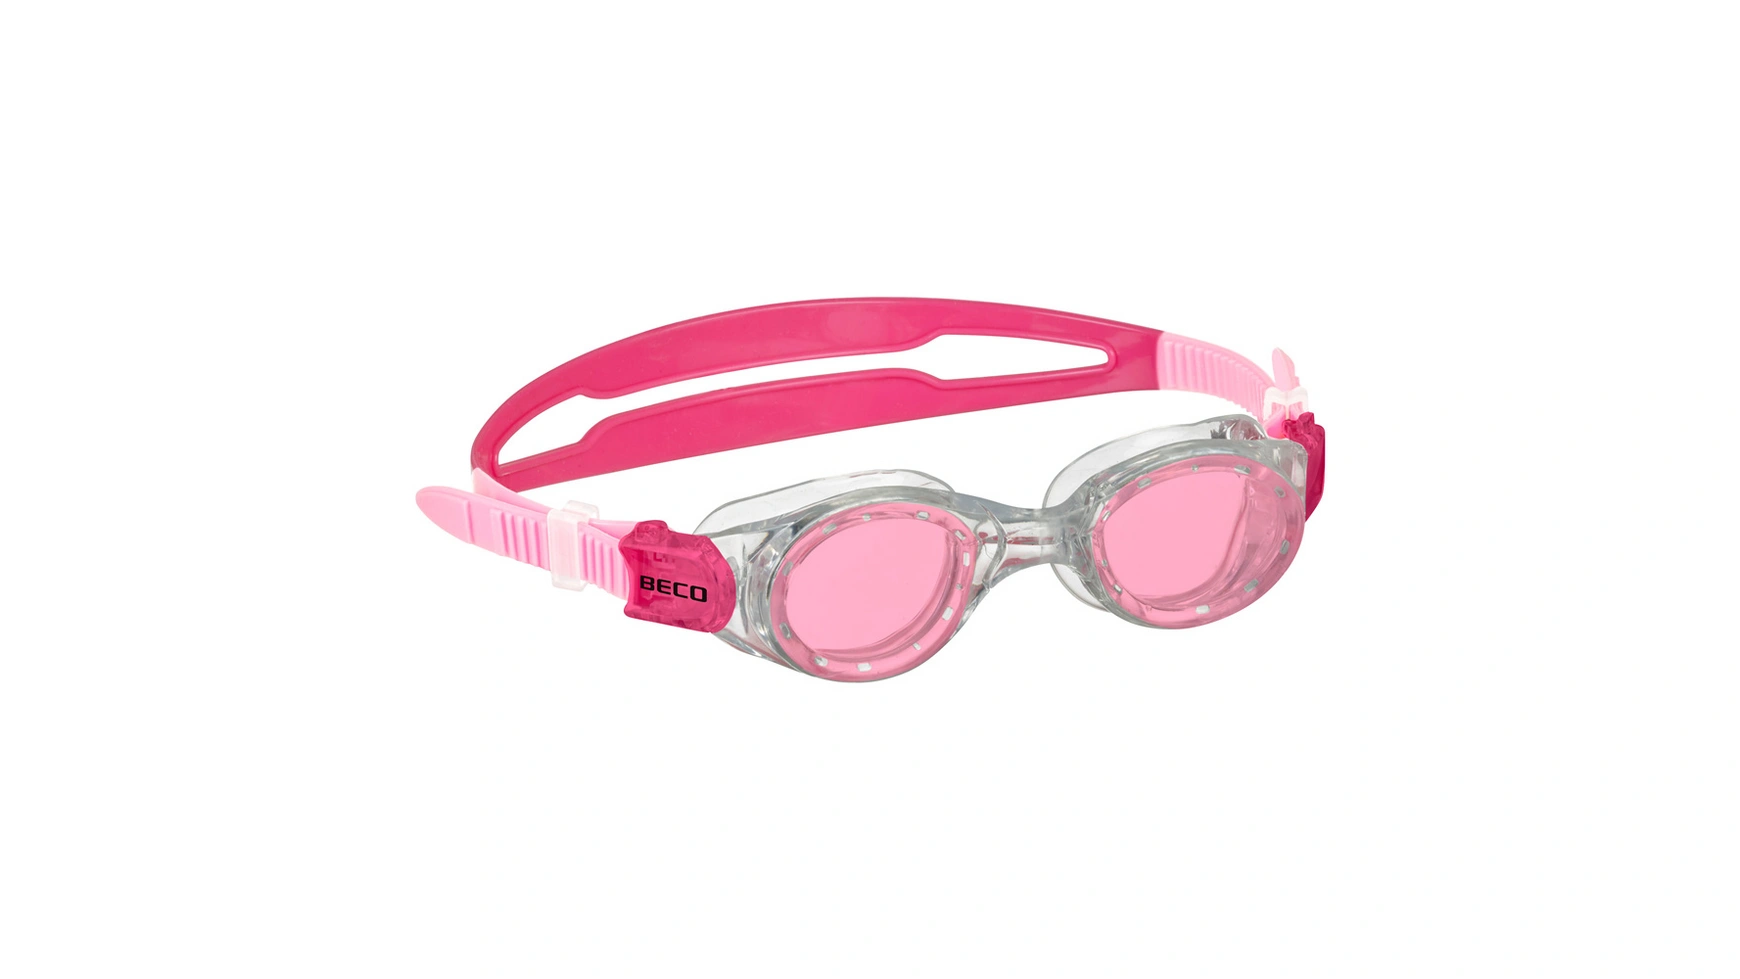 Beco Детские очки для плавания VIGO 8+ очки для плавания детские очки для плавания прямые продажи с завода водонепроницаемые противотуманные детские силиконовые очки очки